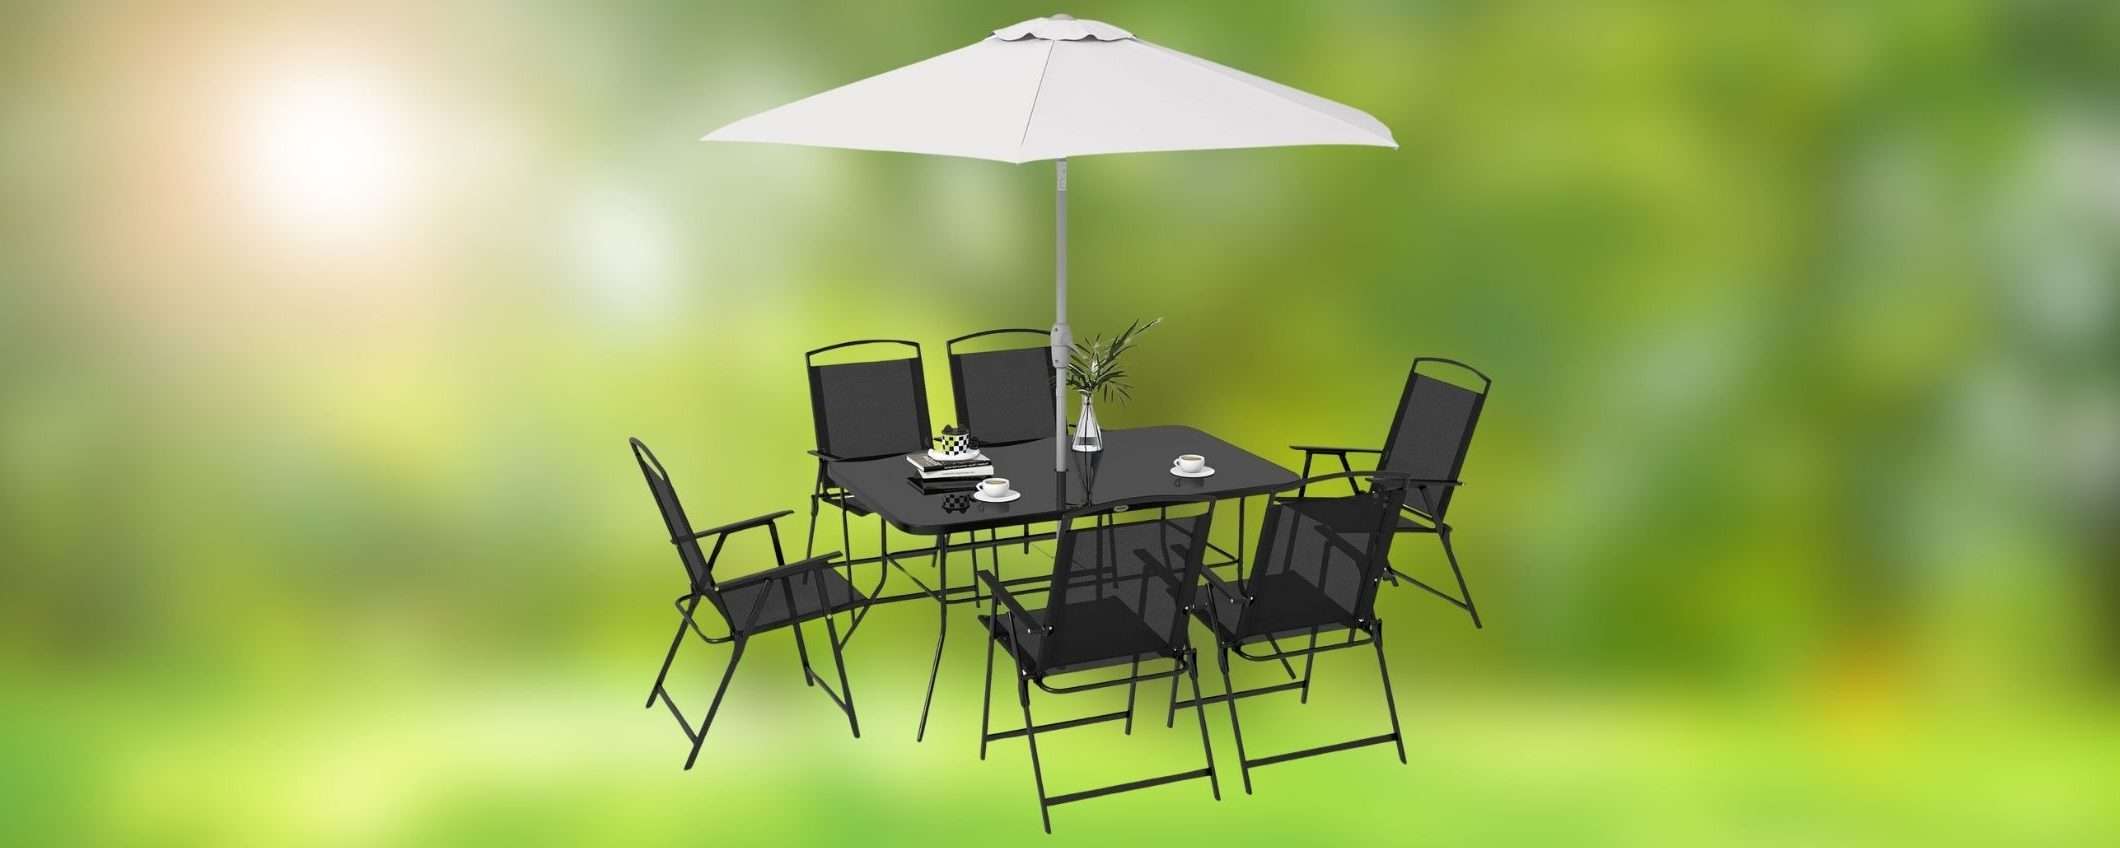 Set da giardino COMPLETO: tavolo, 6 sedie e ombrellone in DOPPIO SCONTO su Amazon